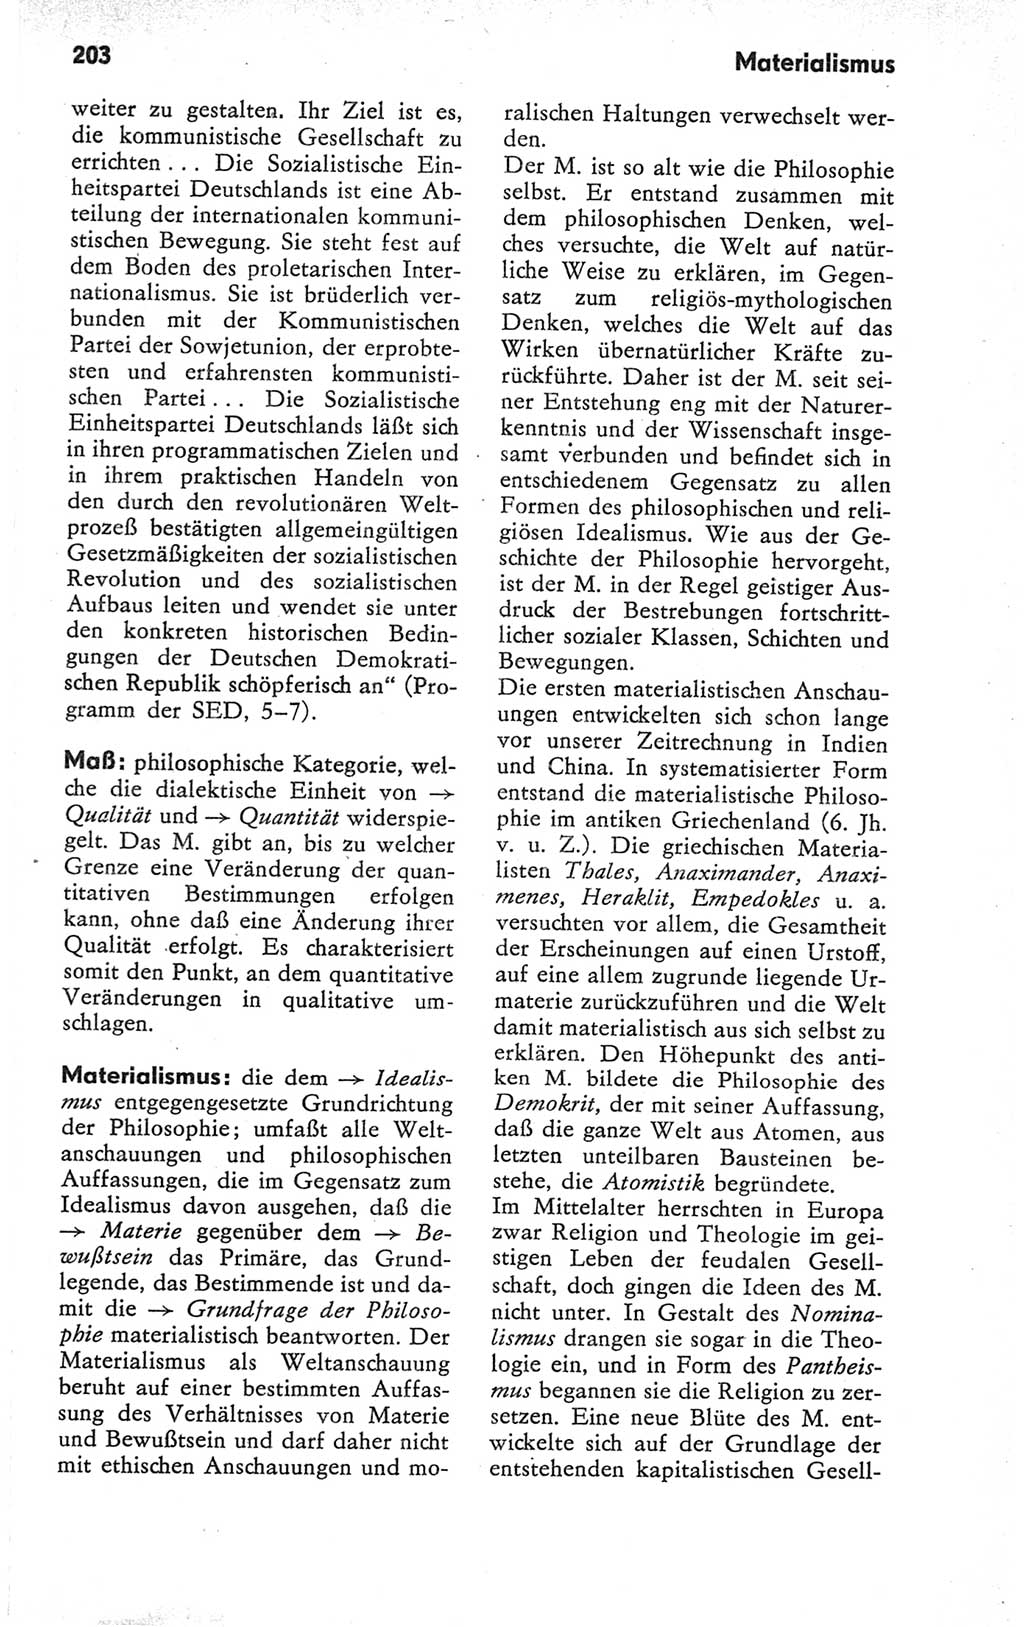 Kleines Wörterbuch der marxistisch-leninistischen Philosophie [Deutsche Demokratische Republik (DDR)] 1979, Seite 203 (Kl. Wb. ML Phil. DDR 1979, S. 203)